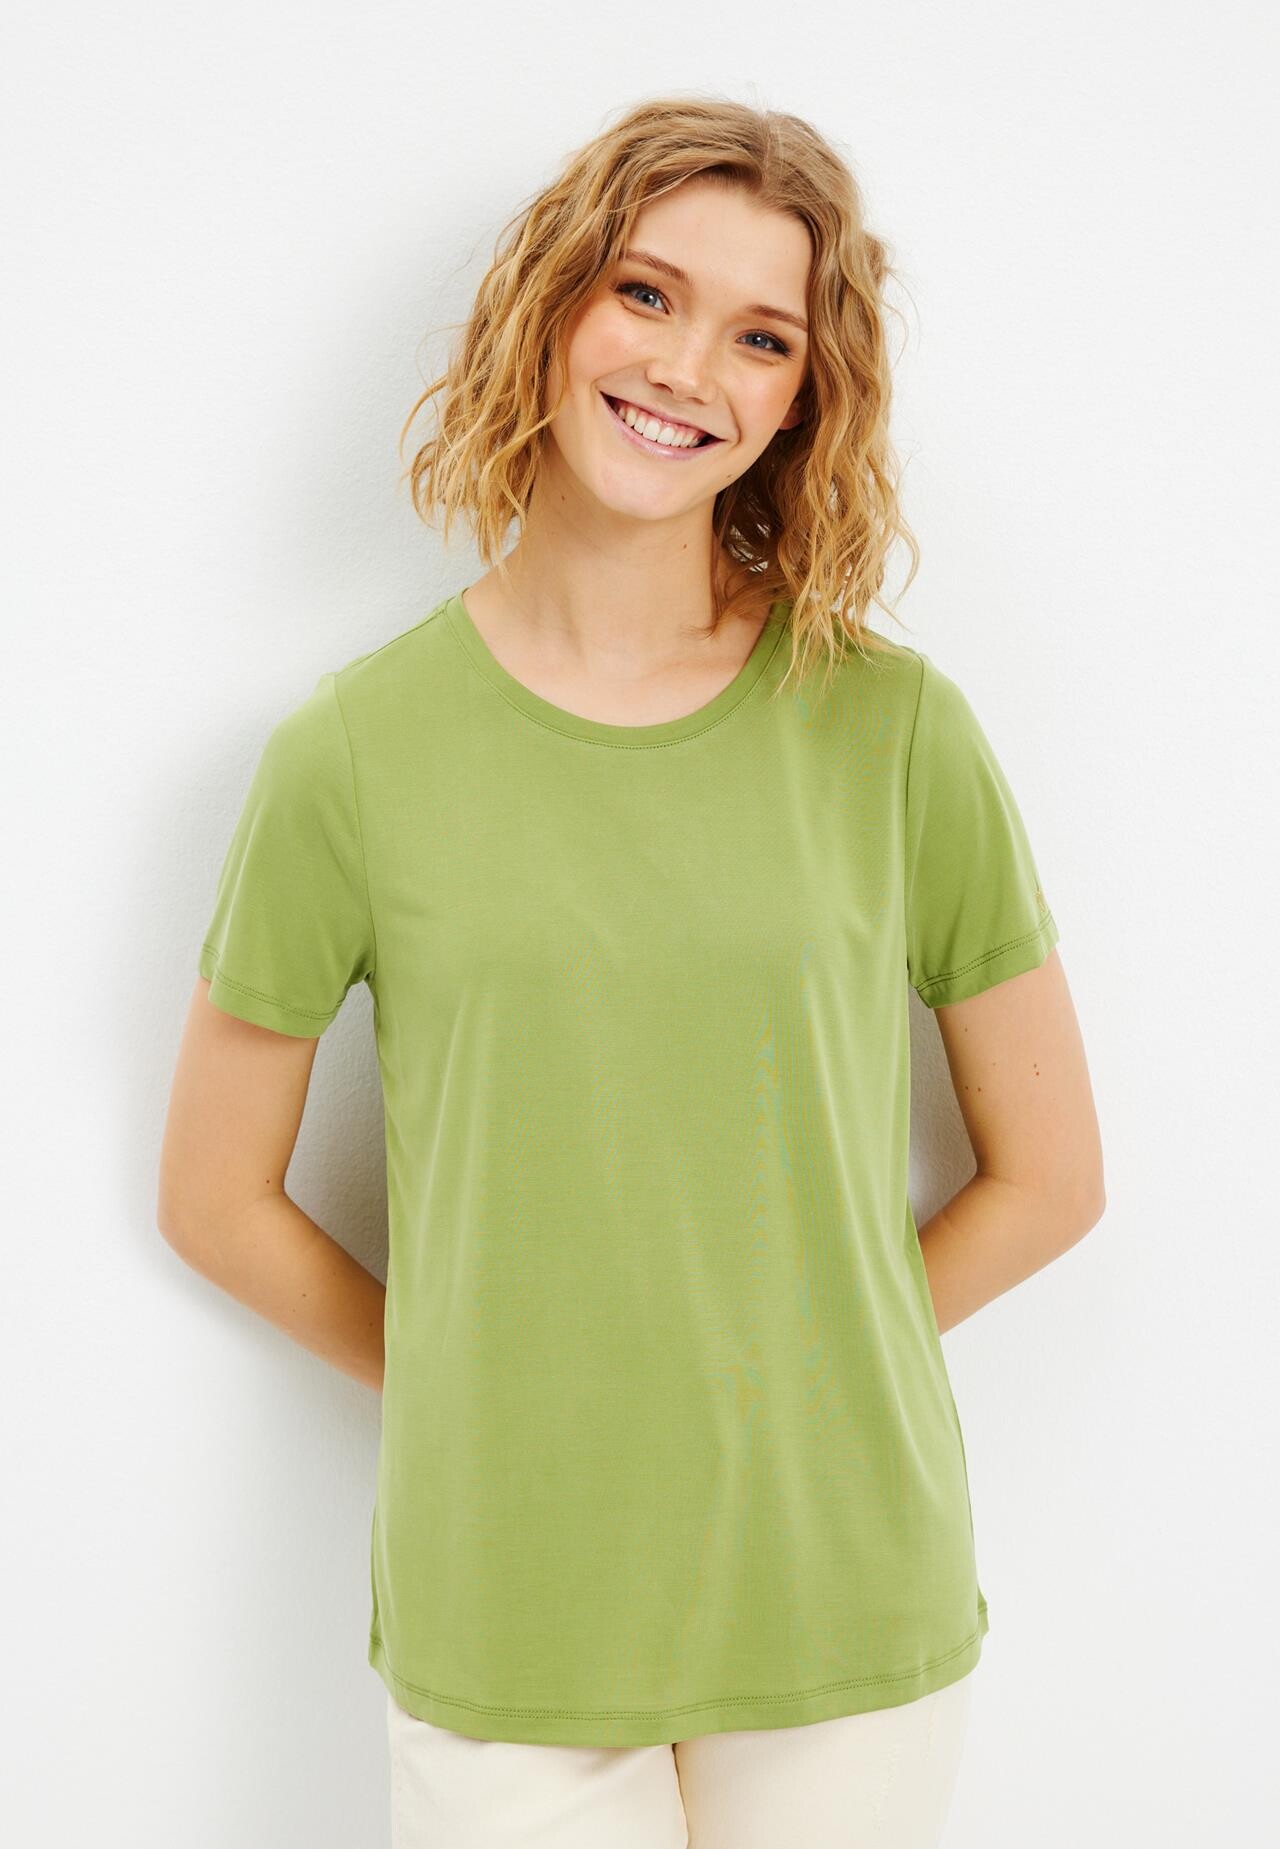 In Front Nina T-shirt, Farve: Apple Grøn, Størrelse: M, Dame